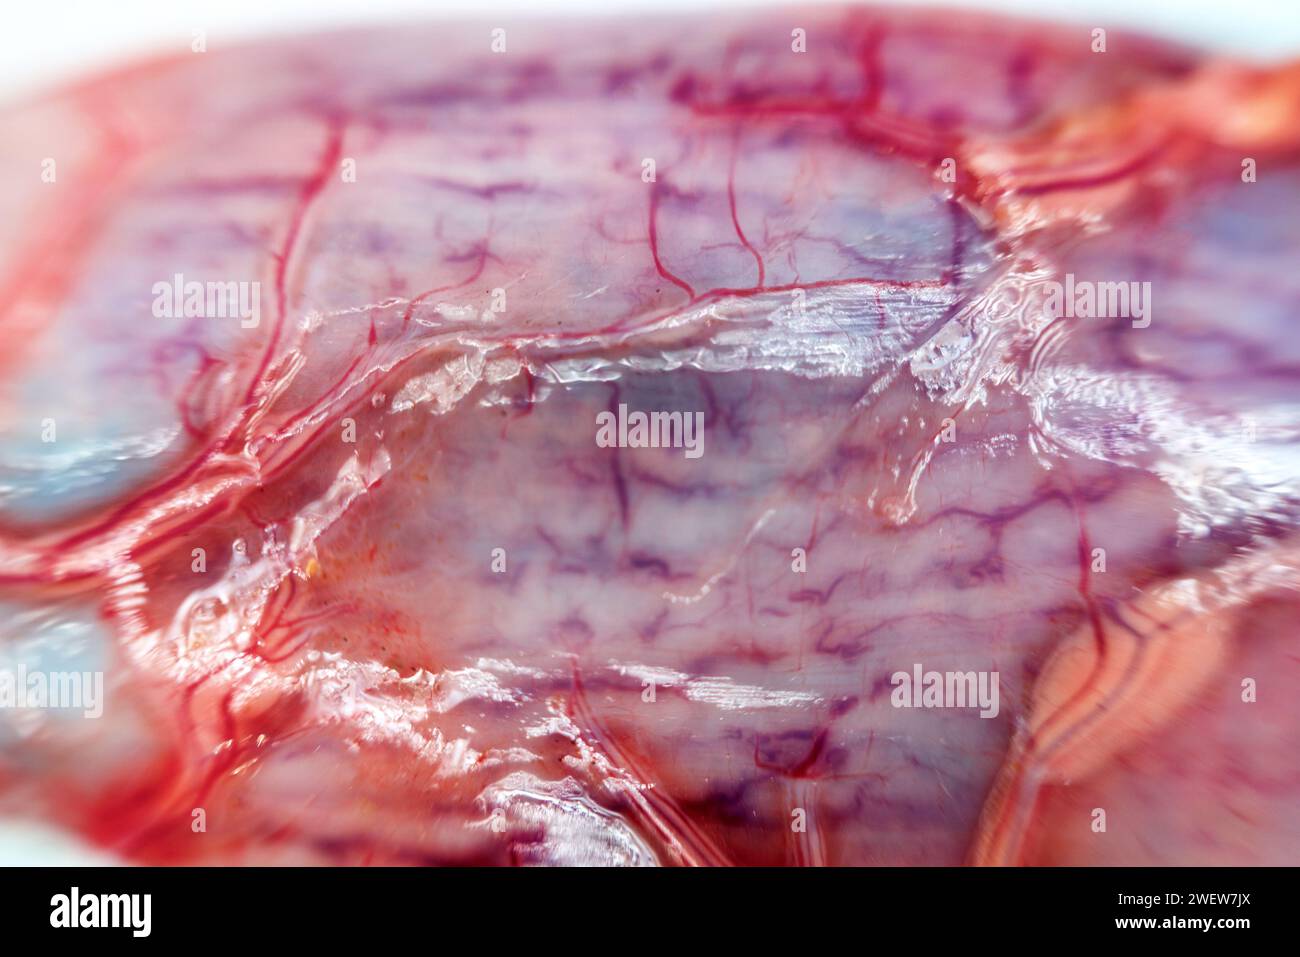 Anatomia dei pesci. Pike (Esox lucius). Il parenchima epatico è diviso in lobuli e coperto da una membrana fibrosa. Digestivo, metabolico e Protect Foto Stock